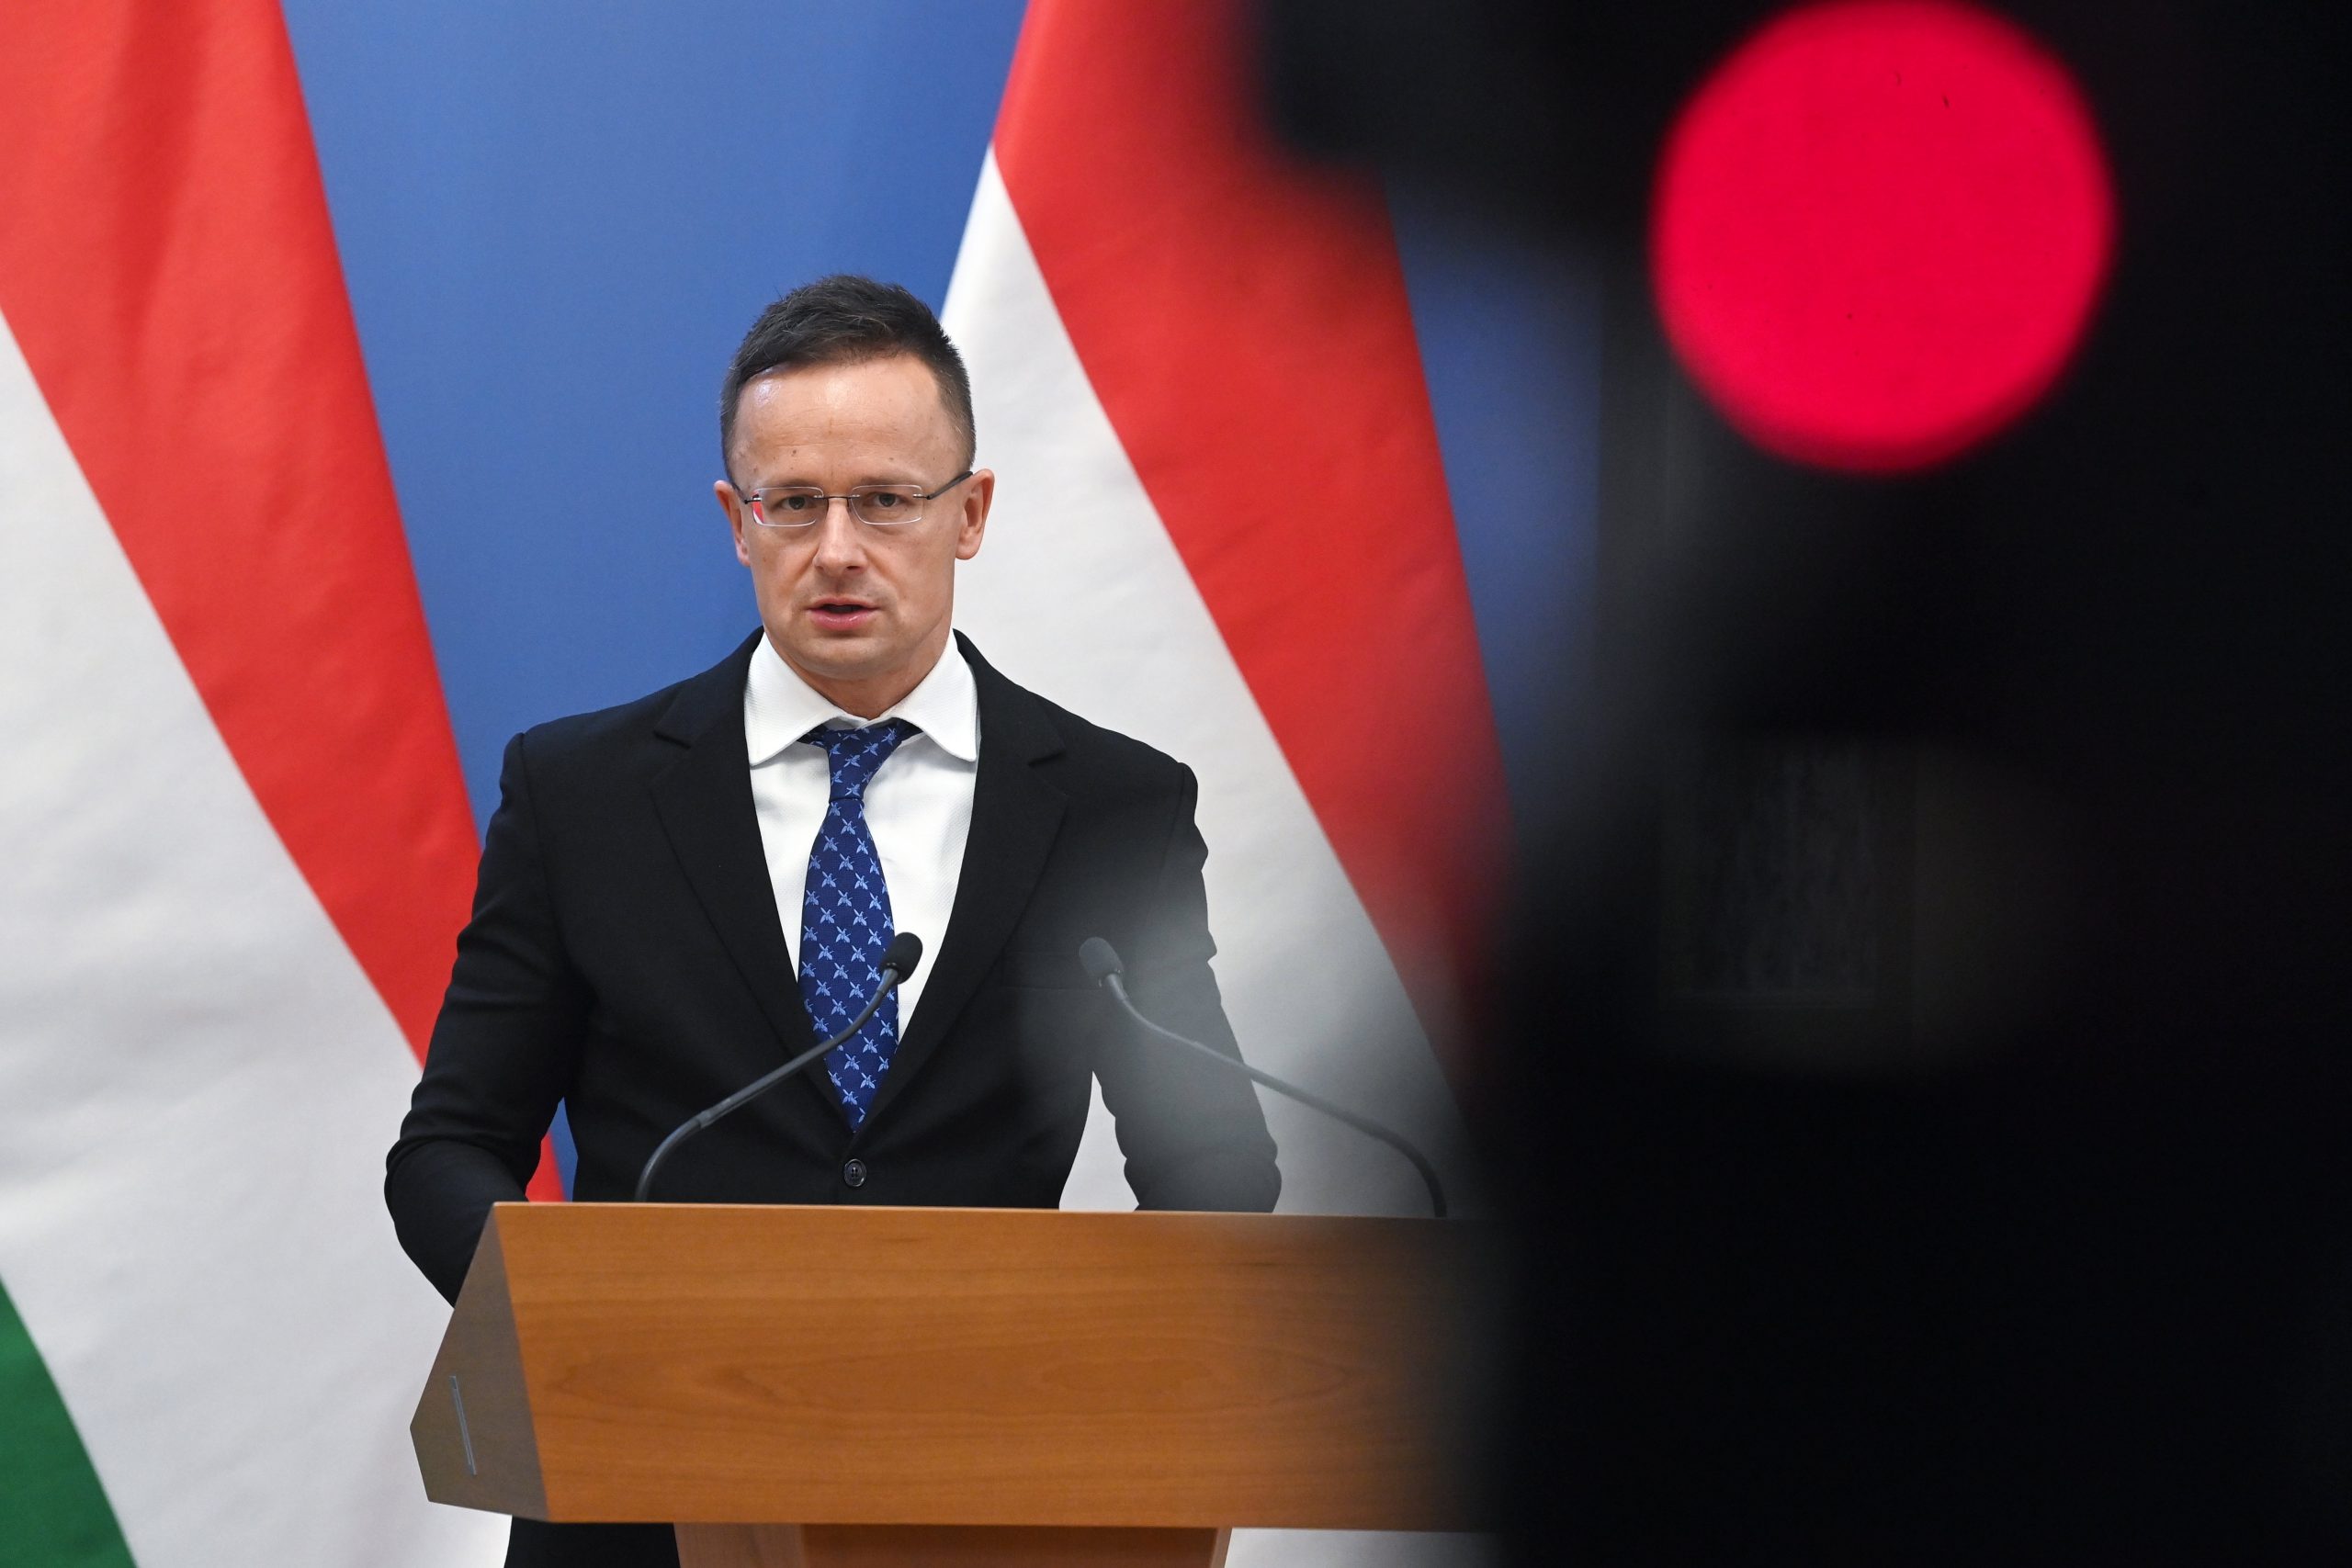 FM Szijjártó: 'Sanctions Should Not Endanger Hungary's Energy Supply'